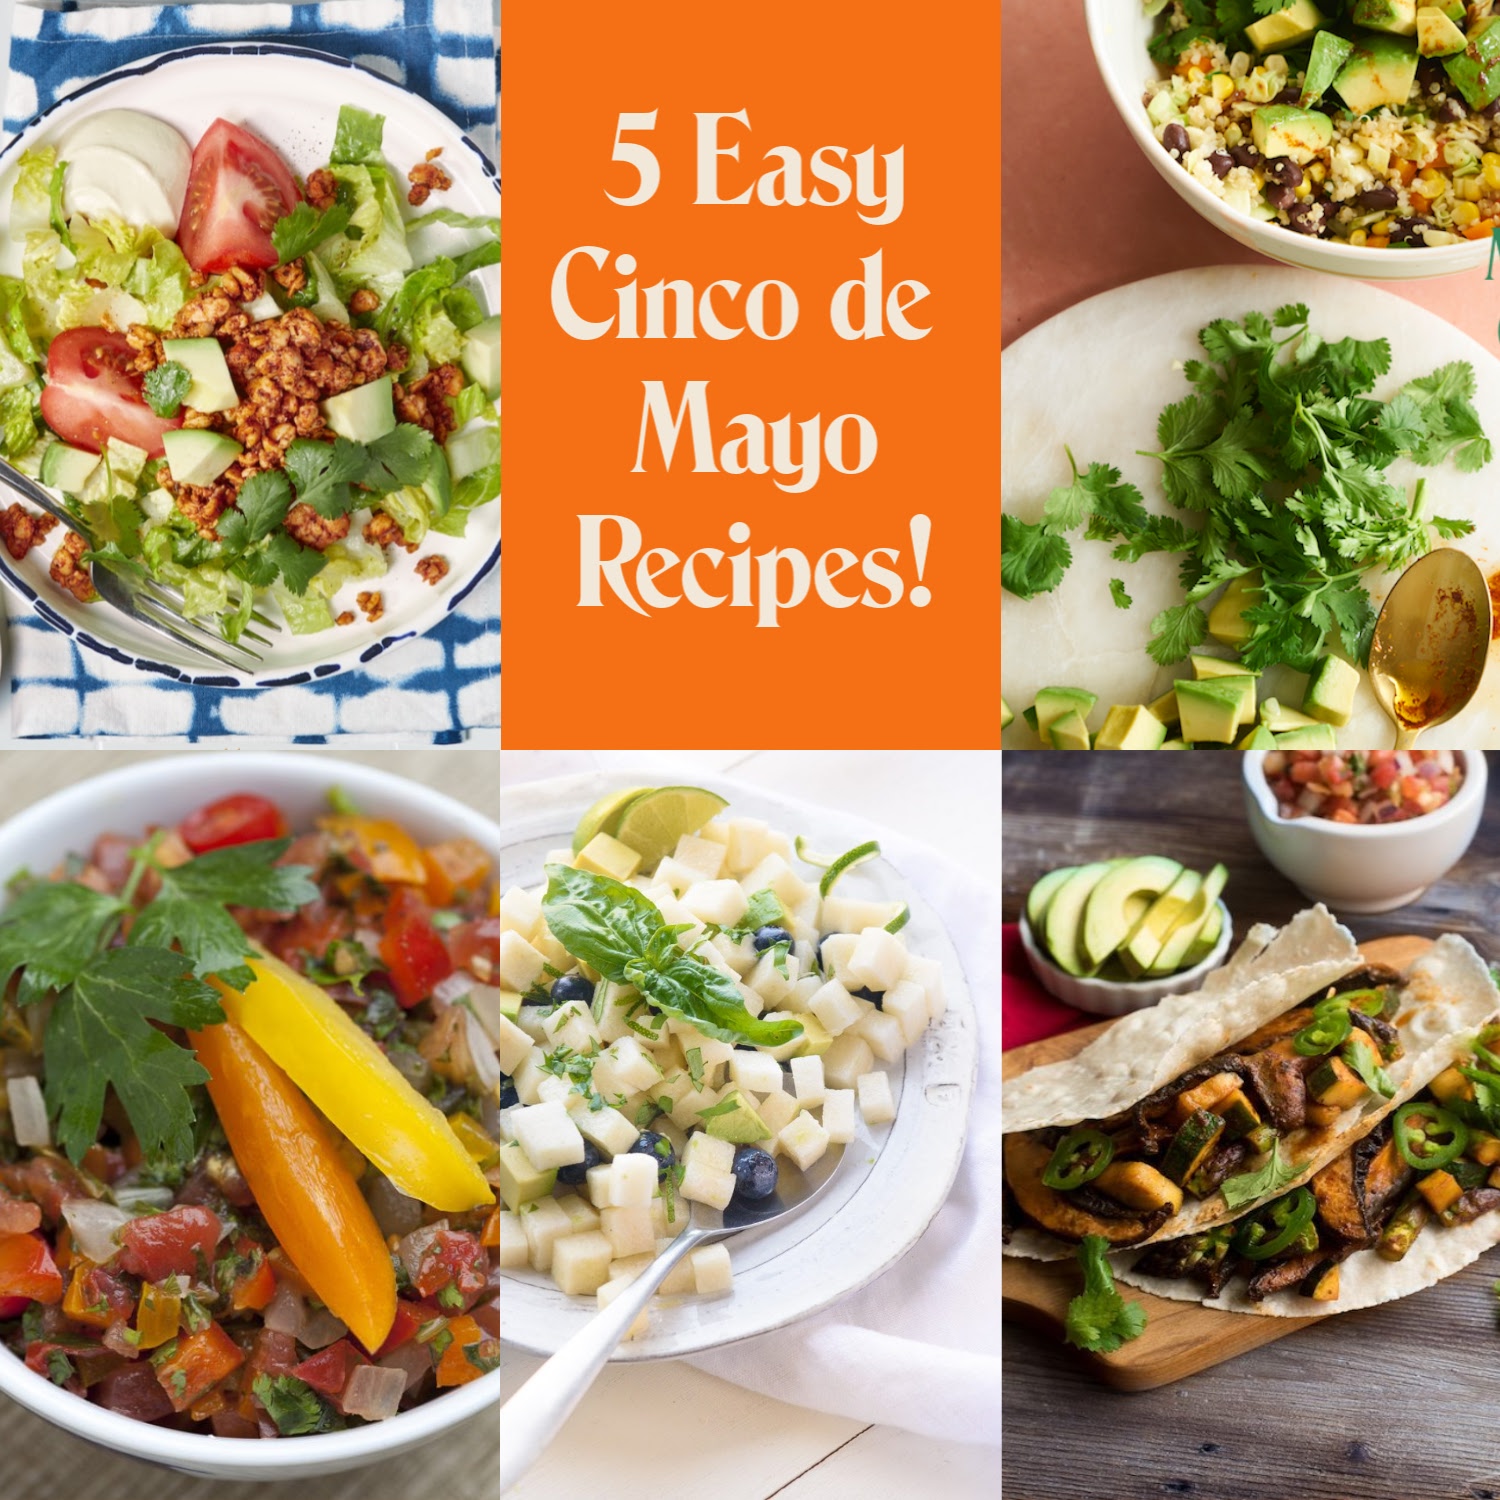 5 Easy Cinco de Mayo Recipes!